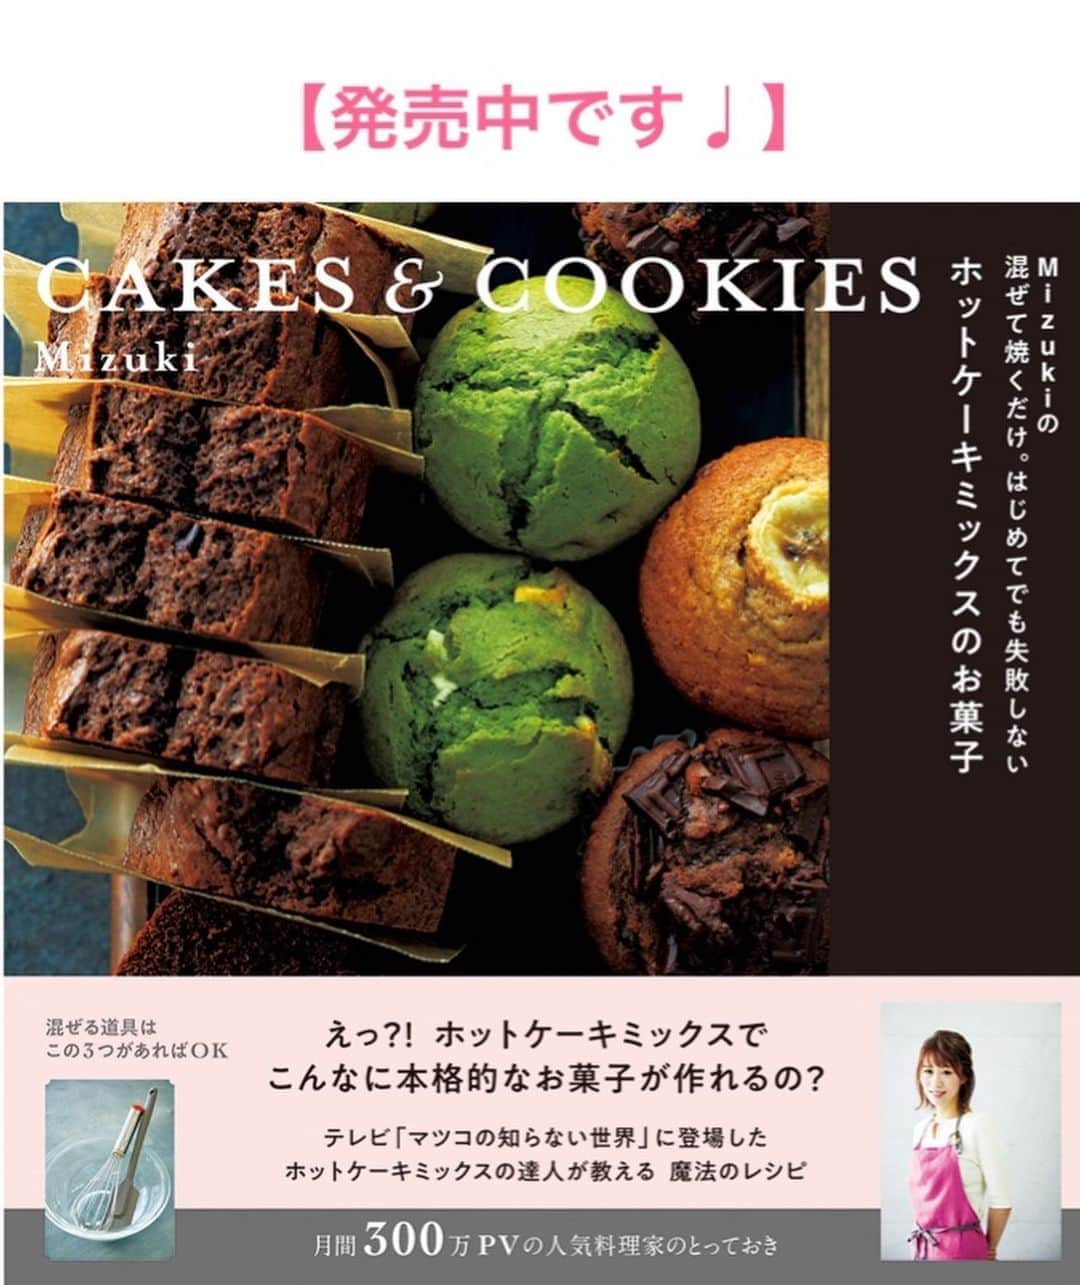 Mizuki【料理ブロガー・簡単レシピ】さんのインスタグラム写真 - (Mizuki【料理ブロガー・簡単レシピ】Instagram)「・﻿ 【レシピ】ーーーーーーーーーーーーー﻿ ホットケーキミックスで！﻿ ブルーベリークリームチーズマフィン﻿ ーーーーーーーーーーーーーーーーーー﻿ ﻿ ﻿ ﻿ おはようございます(*^^*)﻿ ﻿ 今日ご紹介させていただくのは﻿ ホットケーキミックスで作る﻿ ブルーベリークリームチーズマフィン♩﻿ コクのあるチーズの風味と﻿ ブルーベリーの酸味が好相性の﻿ 爽やかなスイーツです♡♡﻿ ﻿ もちろん作り方は超簡単(*´艸`)﻿ バター不使用！混ぜて焼くだけ！﻿ ブルーベリーは冷凍でもOKなので﻿ お気軽にお試し下さいね(*^^*)﻿ ﻿ ﻿ ﻿ ーーーーーーーーーーーーーーーーーーーー﻿ 【マフィン型1台(6個)分】﻿ ●卵...1個﻿ ●砂糖...大2﻿ ●牛乳...60ml﻿ ●サラダ油...60g﻿ ホットケーキミックス...150g﻿ クリームチーズ...70g﻿ ブルーベリー...70g﻿ ﻿ (準備) 型にグラシンカップを敷く。オーブンを180度に予熱する。クリームチーズは1cm角に切る。﻿ 1.ボウルに●を入れて泡立て器でよく混ぜる。続けてホットケーキミックスを加えてゴムべらで混ぜ、粉っぽさが残っている内にクリームチーズとブルーベリー(飾り用に一部残す)も加えて混ぜる。﻿ 2.型に注ぎ、残したクリームチーズとブルーベリーをのせ、予熱したオーブンで20分焼く。﻿ ーーーーーーーーーーーーーーーーーーーー﻿ ﻿ ﻿ ﻿ 《ポイント》﻿ ♦︎クリームチーズとブルーベリーの量は増減しても大丈夫です♩﻿ ♦︎冷凍ブルーベリーを使用する場合は凍ったまま加えて下さい♩﻿ ♦︎焼けたら型から取り出し、アミにのせて冷まして下さい♩﻿ ♦︎ブルーベリー入りなので冷蔵庫保存が安心です♩﻿ ﻿ ﻿ ﻿ ﻿ ﻿ ﻿ ＿＿＿＿＿＿＿＿＿＿＿＿＿＿＿＿＿＿＿﻿ 📕6刷重版しました📕﻿ 簡単・時短！ 毎日のごはんがラクになる﻿ ✨🦋 【 #Mizukiの今どき和食 】🦋✨﻿ ＿＿＿＿＿＿＿＿＿＿＿＿＿＿＿＿＿＿＿﻿ なるべく少ない材料で﻿ 手間も時間も省きながら﻿ 簡単にできるおいしい和食レシピ♩﻿ 簡単に失敗なくマスターできる一冊で﻿ もっと気軽に、カジュアルに﻿ 和食を楽しんで下さいね(*^^*)﻿ ＿＿＿＿＿＿＿＿＿＿＿＿＿＿＿＿＿＿＿﻿ ﻿ ﻿ ﻿ ＿＿＿＿＿＿＿＿＿＿＿＿＿＿＿＿＿＿＿﻿ 🎀6刷重版しました🎀﻿ 混ぜて焼くだけ。はじめてでも失敗しない！﻿ 【#ホットケーキミックスのお菓子 】﻿ ﻿ 一冊まるっとホケミスイーツ♩﻿ 普段のおやつから﻿ 特別な日にも使えるレシピを﻿ この一冊に詰め込みました(*^^*)﻿ ホットケーキミックスを使えば﻿ 簡単に本格的なお菓子が作れますよ♡﻿ ＿＿＿＿＿＿＿＿＿＿＿＿＿＿＿＿＿﻿ ﻿ ﻿ ﻿ ﻿ ￣￣￣￣￣￣￣￣￣￣￣￣￣￣￣￣￣￣﻿ レシピを作って下さった際や﻿ レシピ本についてのご投稿には﻿ タグ付け( @mizuki_31cafe )して﻿ お知らせいただけると嬉しいです😊💕﻿ ＿＿＿＿＿＿＿＿＿＿＿＿＿＿＿＿＿＿﻿ ﻿ ﻿ ﻿ ﻿ ﻿ #ホットケーキミックス#マフィン#お菓子作り#バターなし#お菓子作りならコッタ#Mizuki#簡単レシピ#時短レシピ#節約レシピ#料理#レシピ#フーディーテーブル#マカロニメイト#おうちごはん#デリスタグラマー#料理好きな人と繋がりたい#食べ物#料理記録#おうちごはんlover#写真好きな人と繋がりたい#foodpic#cooking#recipe#lin_stagrammer#foodporn#yummy#ブルーベリークリームチーズマフィンm」8月9日 7時21分 - mizuki_31cafe